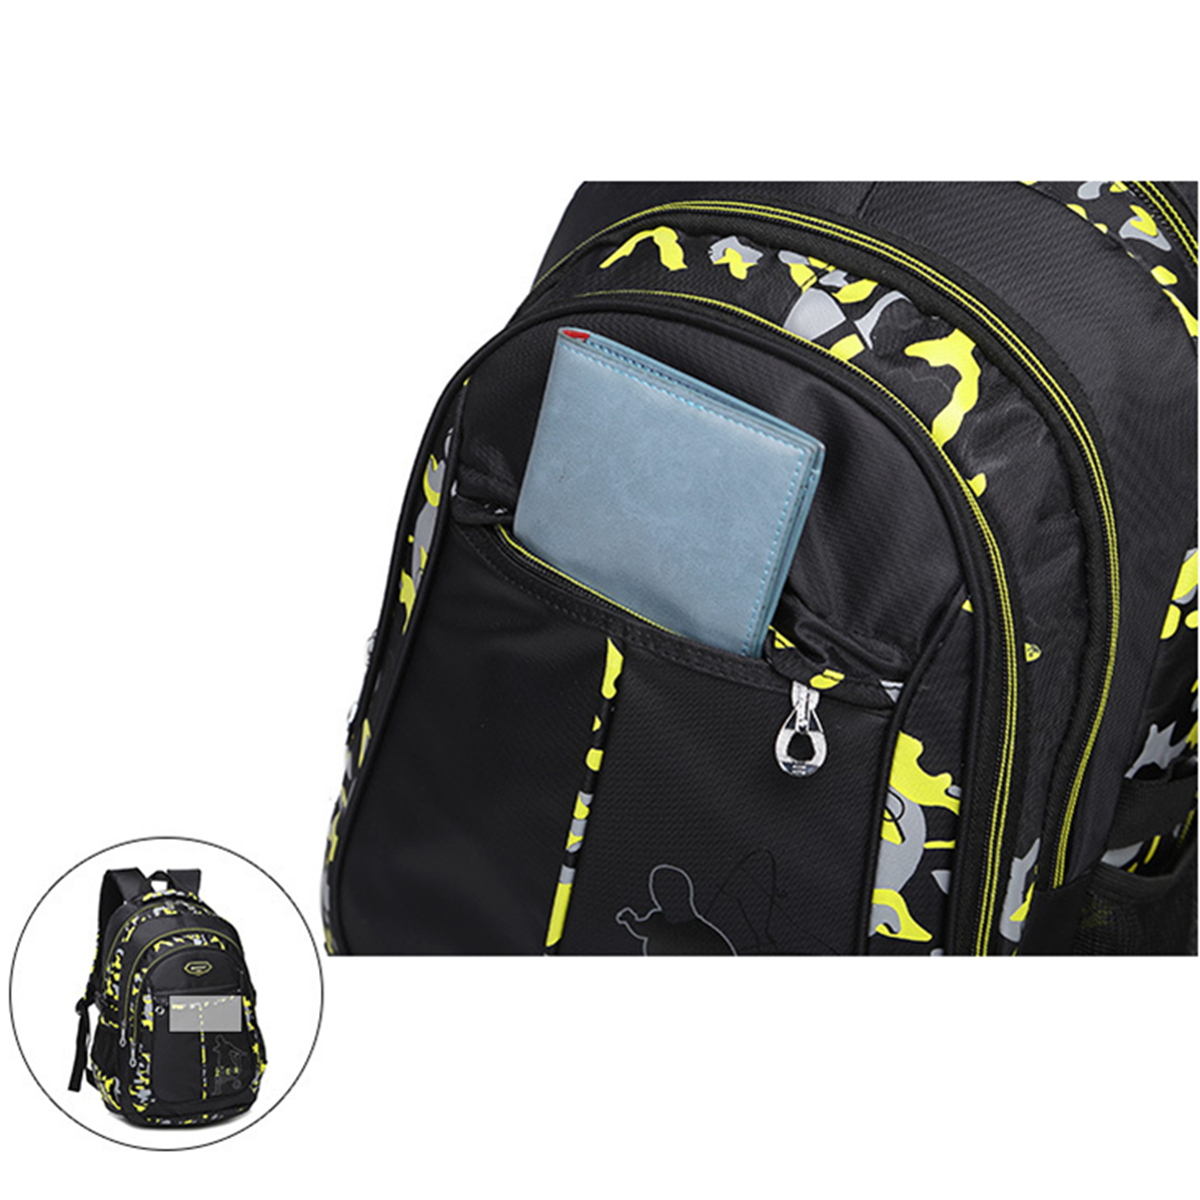 Men-Waterproof-Big-Capacity-Travel-Outdoor-Laptop-Shoulders-Bag-School-Backpack-1188252-8